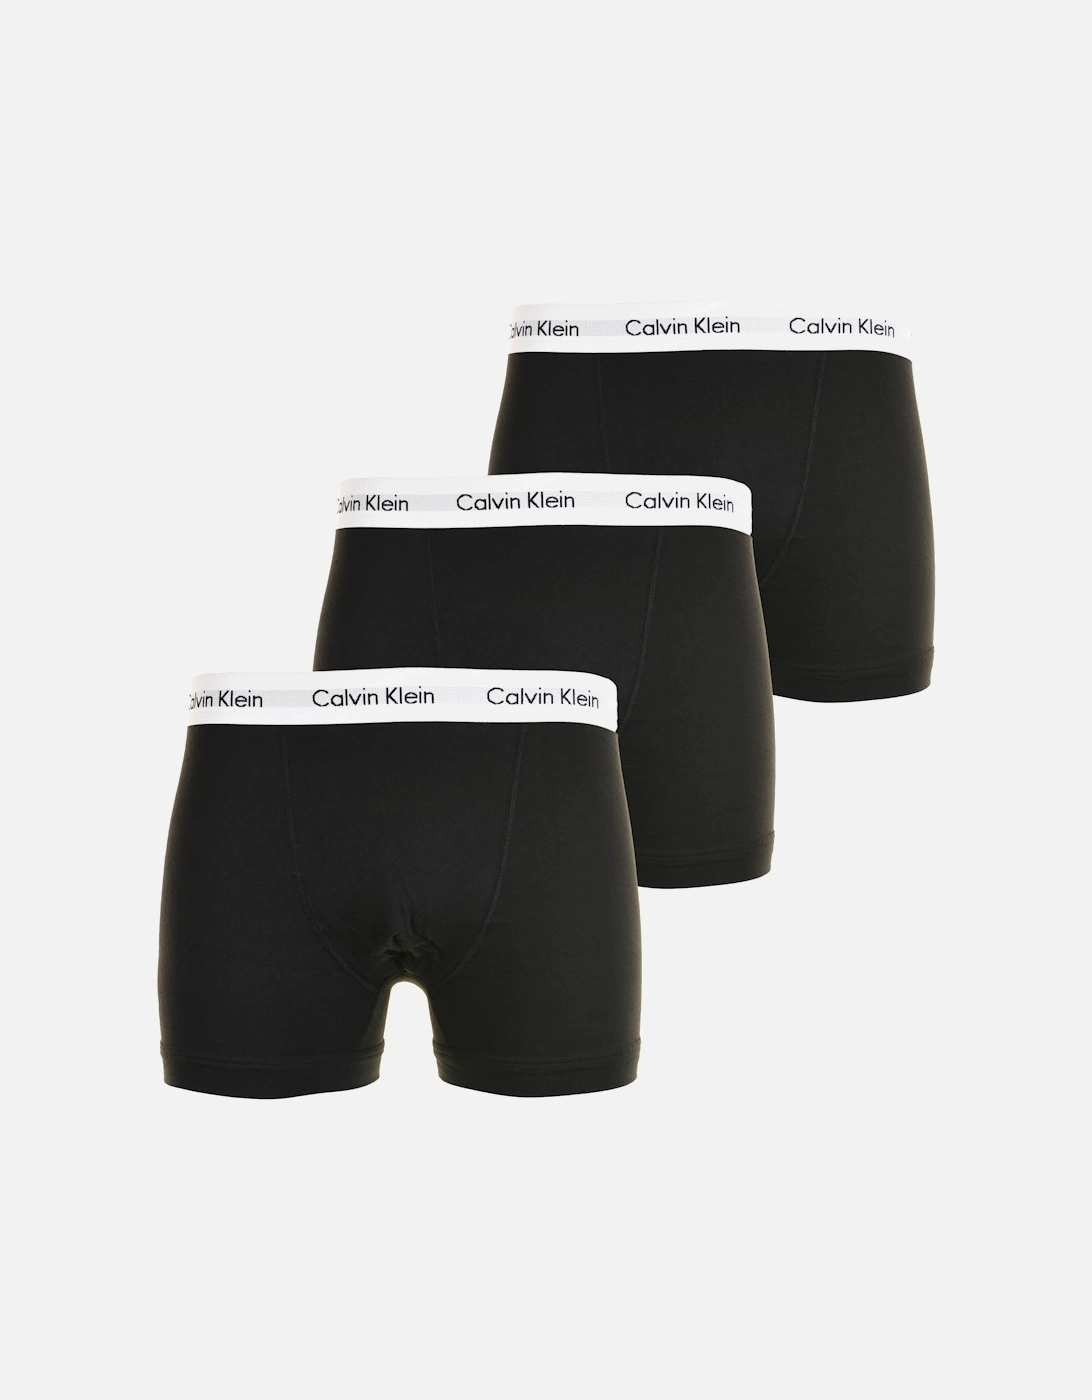 Mens 3 Pack Boxer Short Trunks (Black), 4 of 3